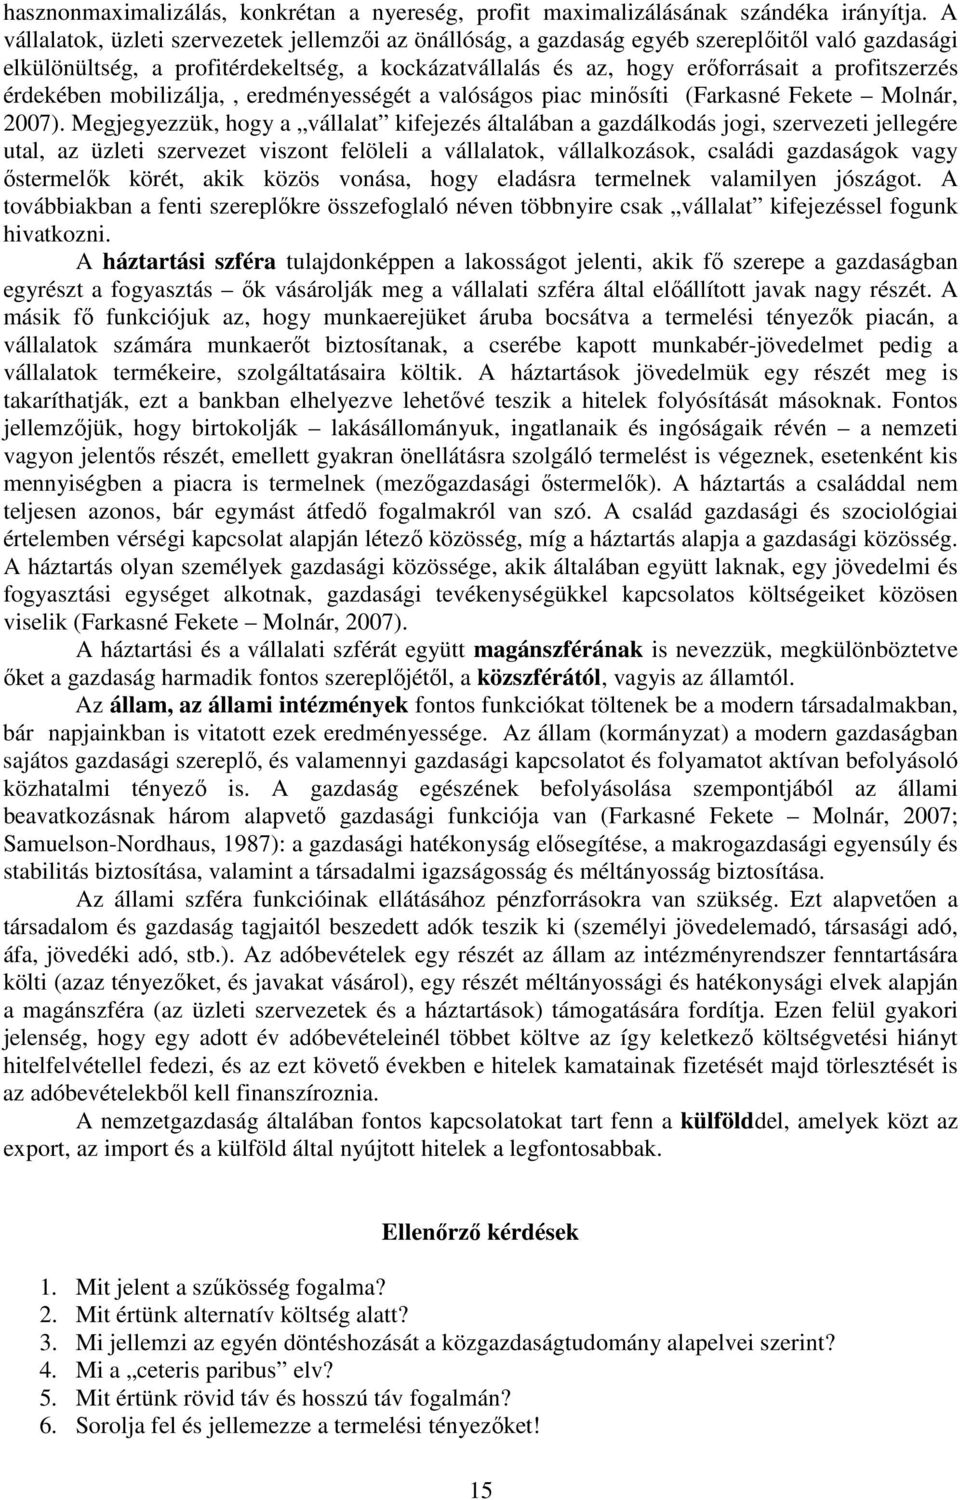 érdekében mobilizálja,, eredményességét a valóságos piac minısíti (Farkasné Fekete Molnár, 2007).